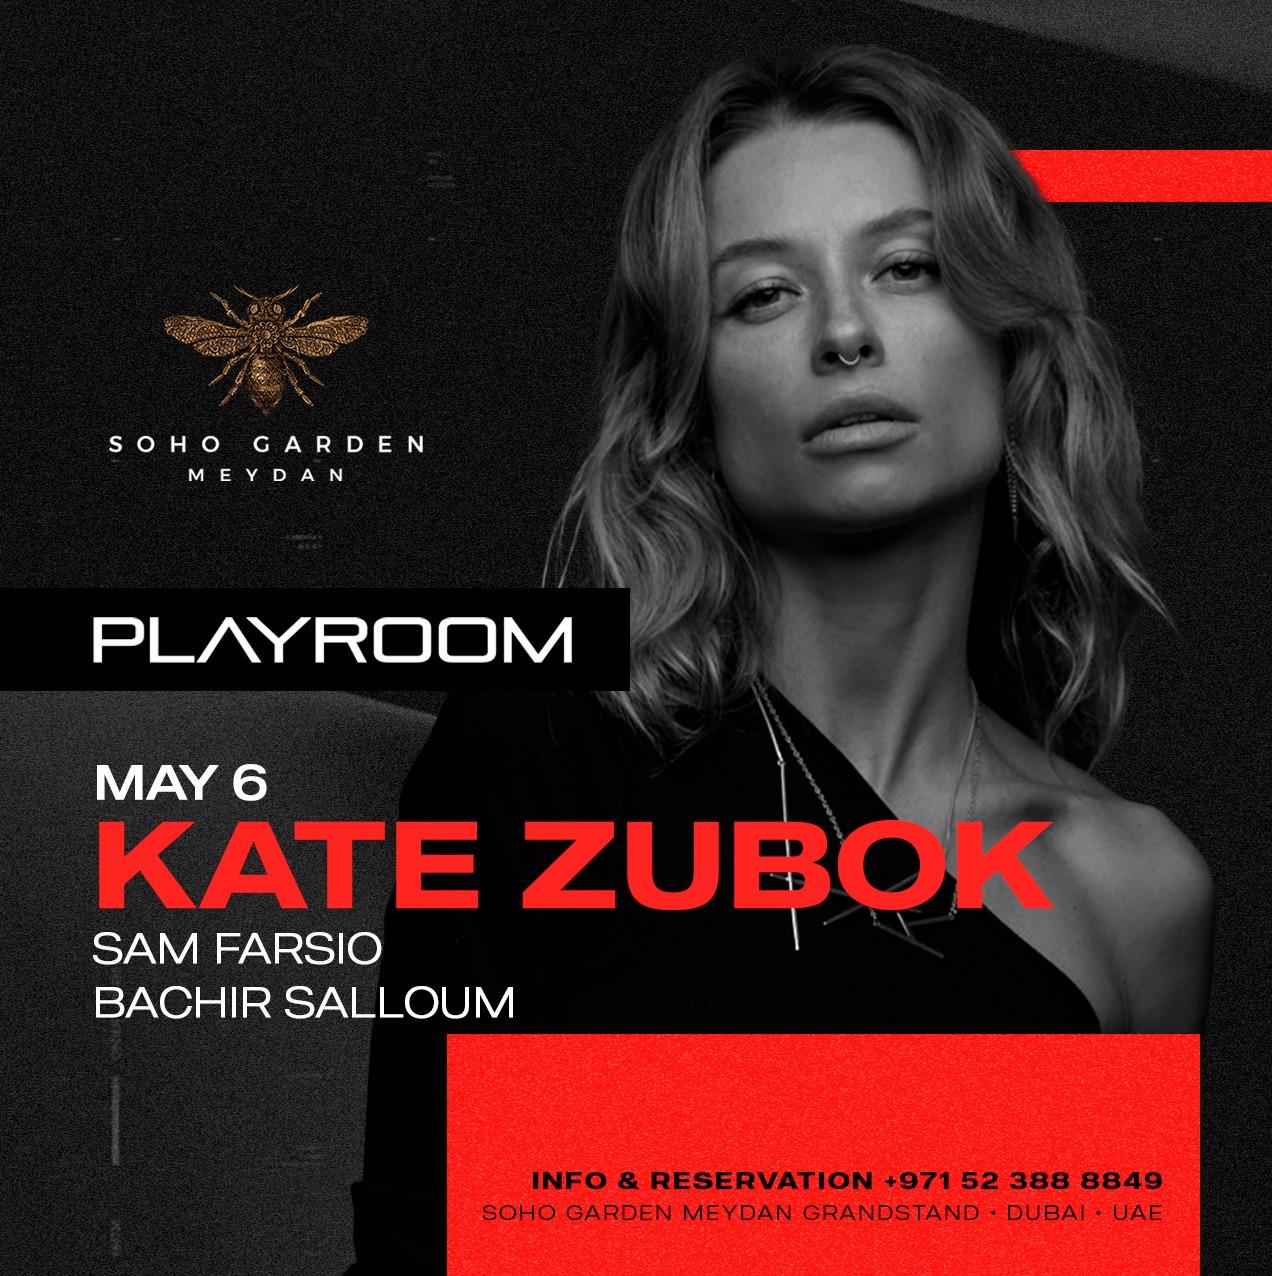 Kate Zubok at Playroom 6th May